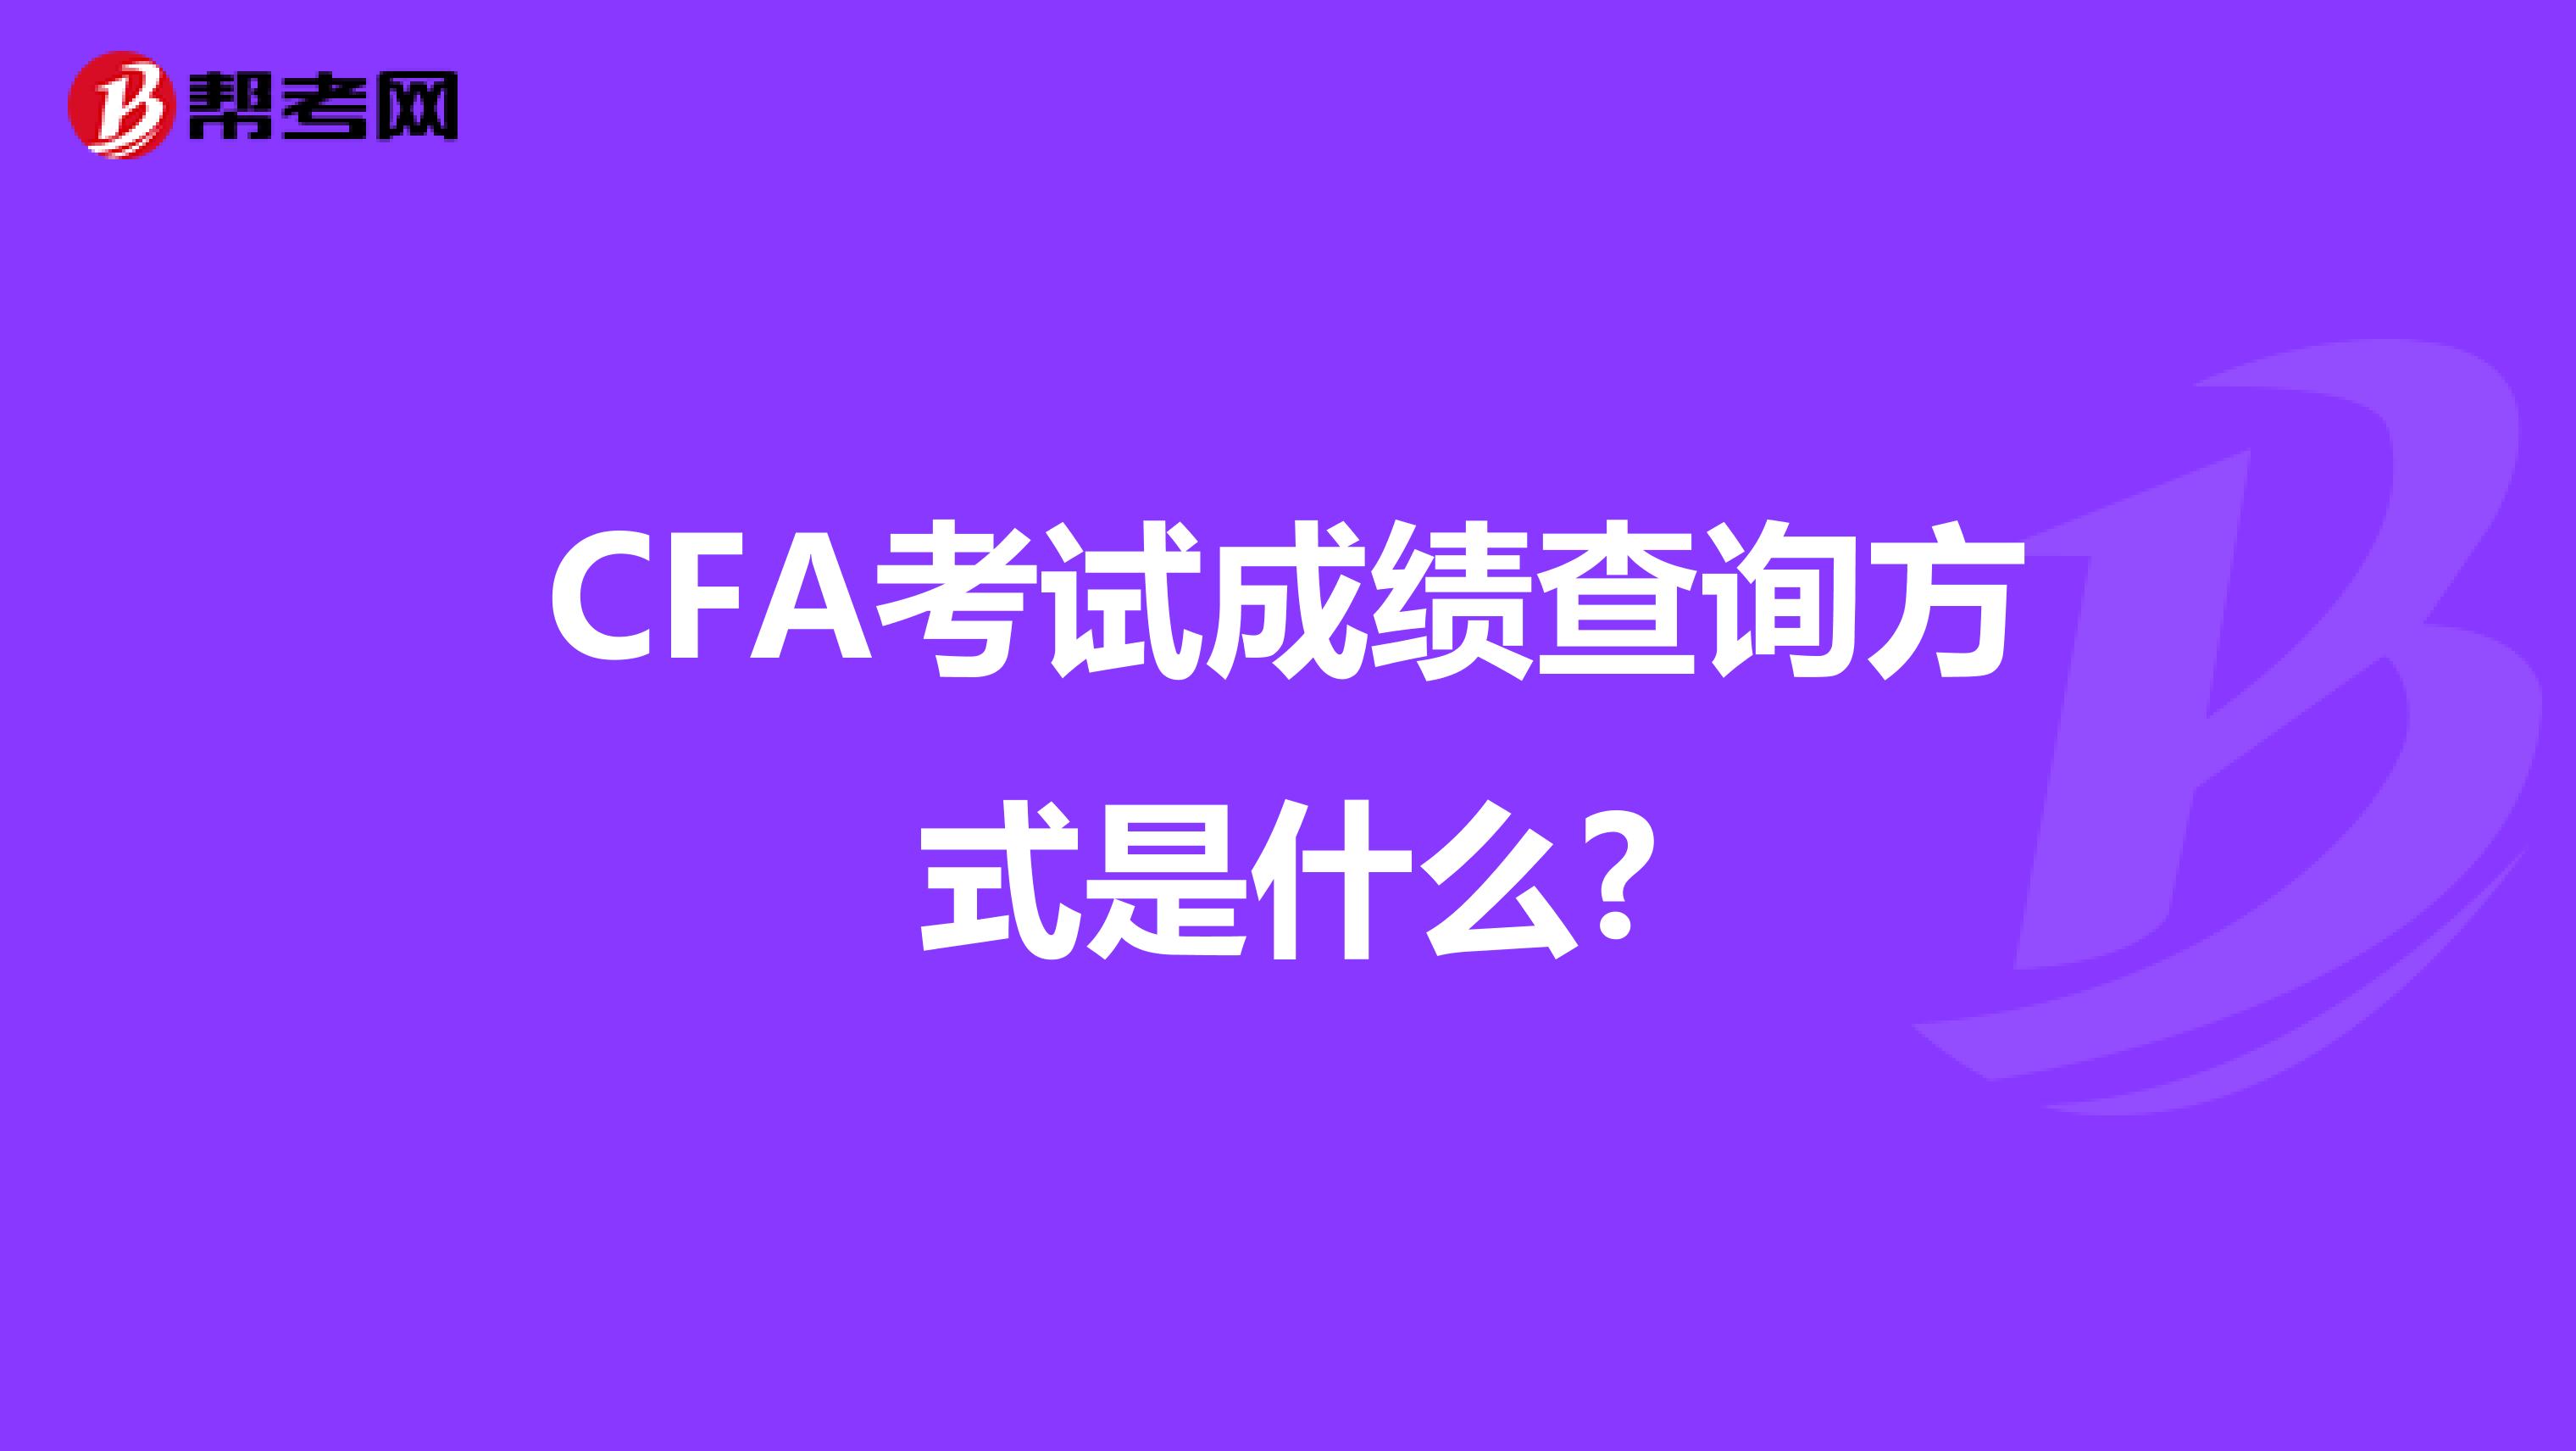 CFA考试成绩查询方式是什么?